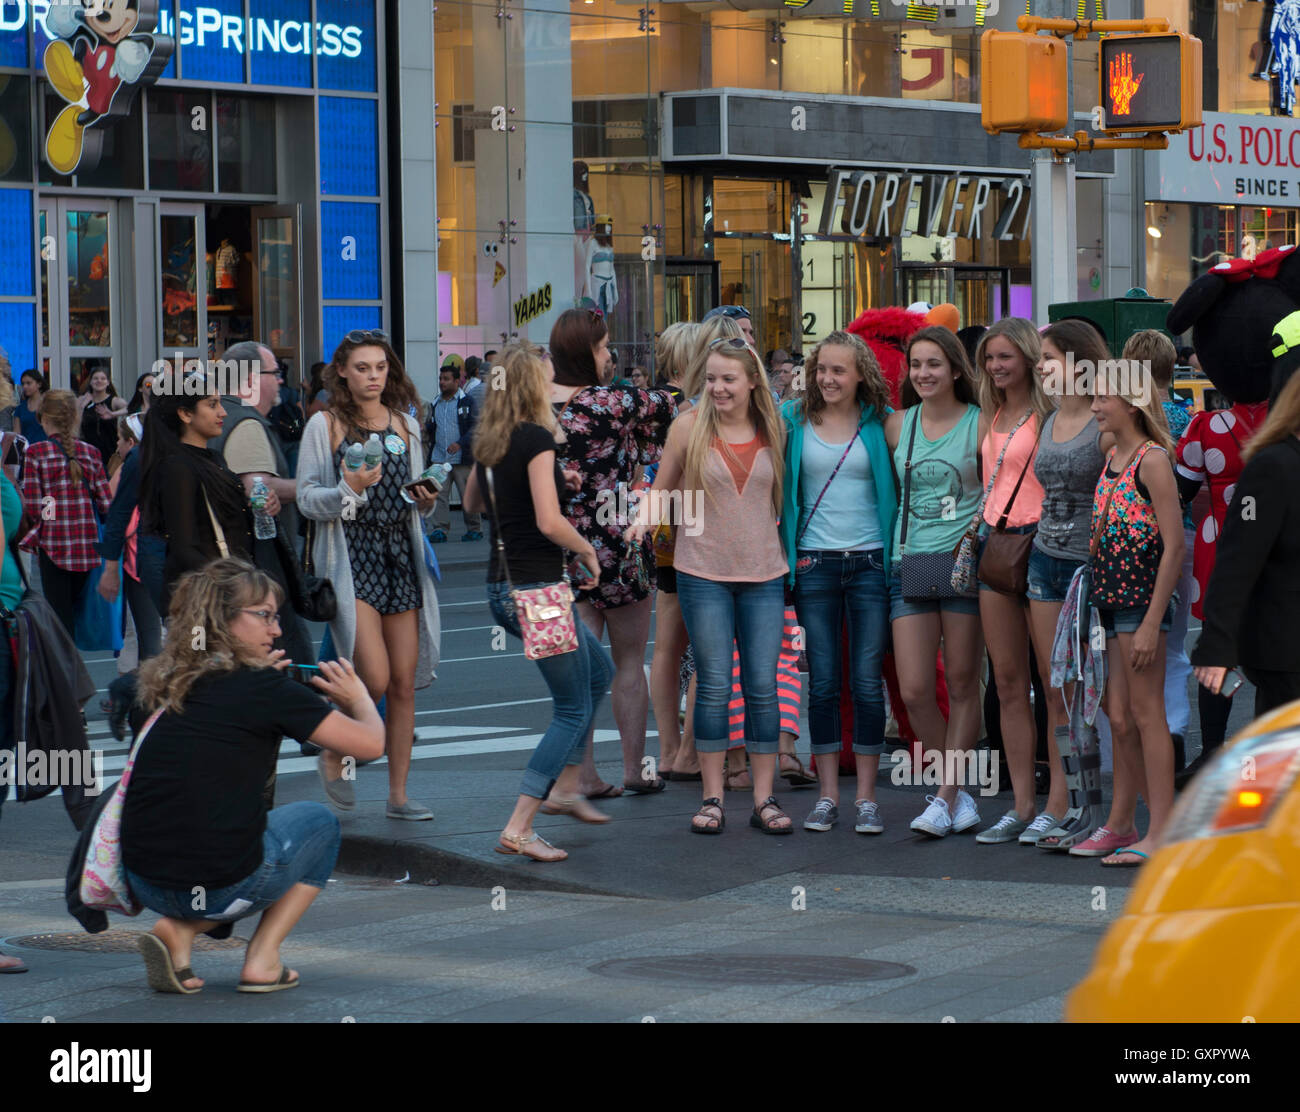 Grupo de mujeres tomando una foto en Time Square, Manhattan, Ciudad de Nueva York Foto de stock